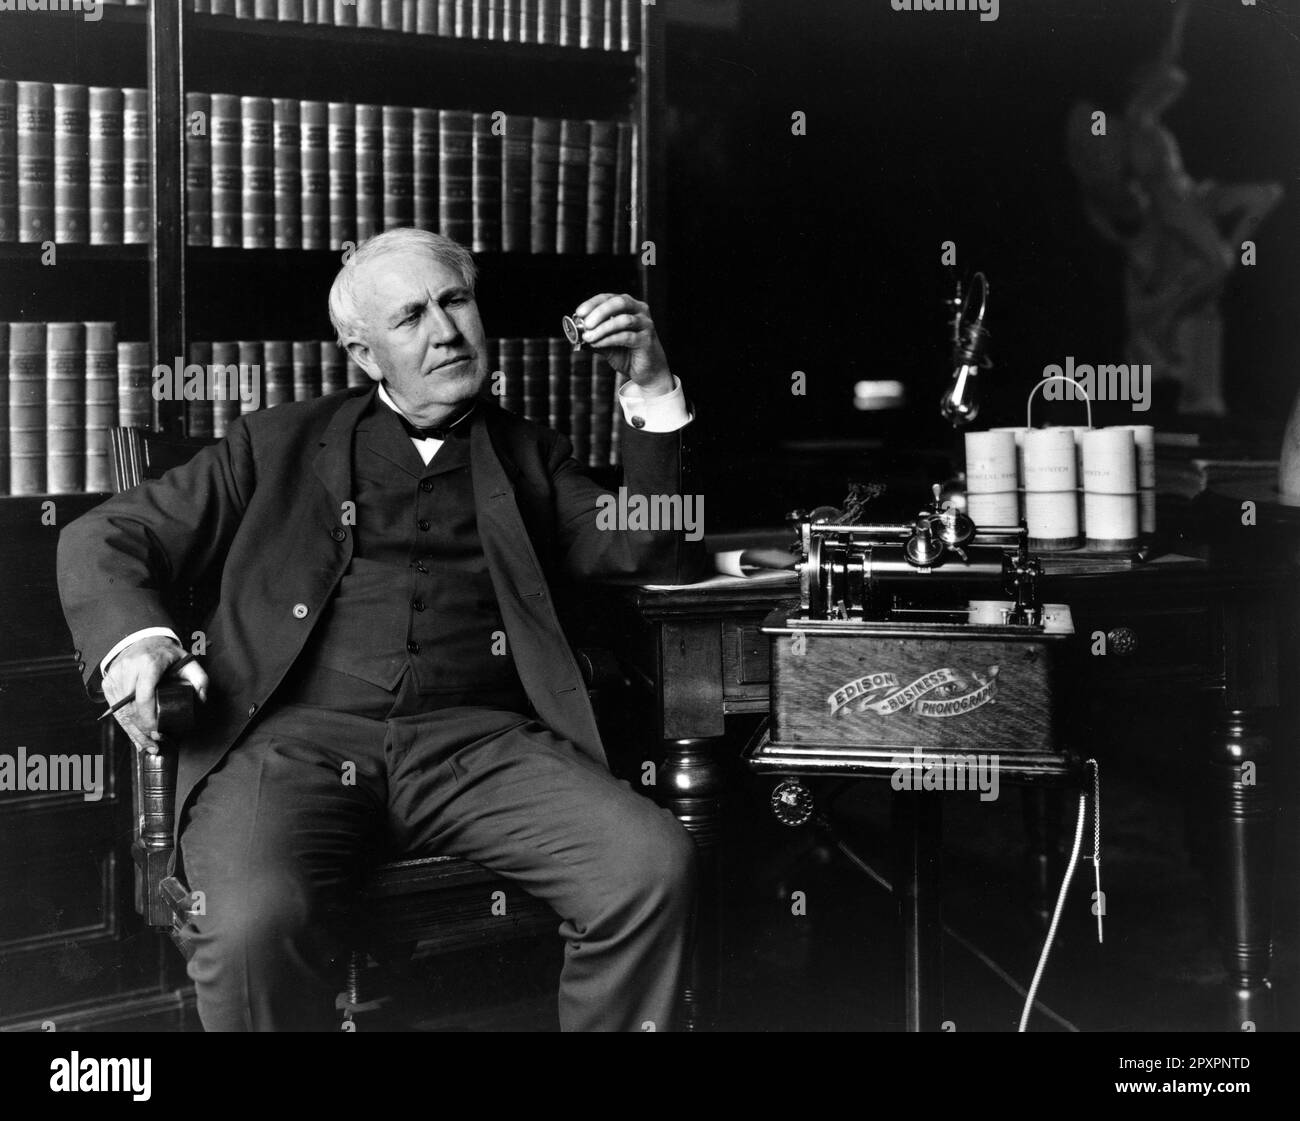 Thomas Edison. L'inventeur et homme d'affaires américain, Thomas Alvar Edison (1847-1931), avec son phonographe d'affaires. Portrait, 1907 Banque D'Images